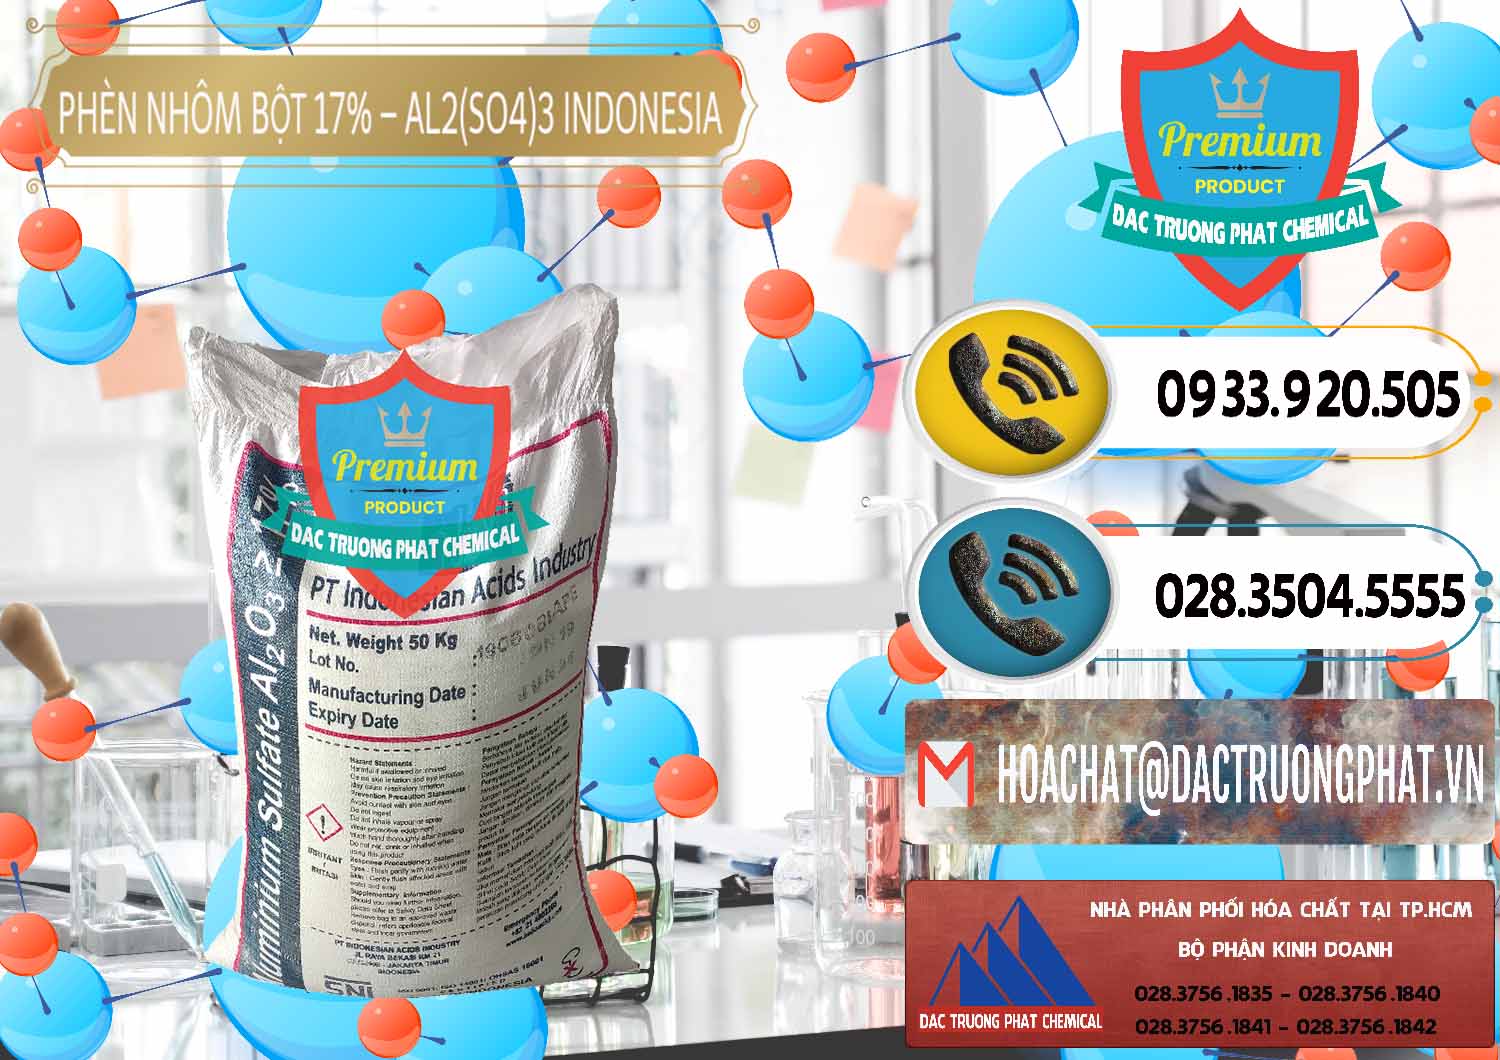 Công ty chuyên bán _ cung cấp Phèn Nhôm Bột - Al2(SO4)3 17% bao 50kg Indonesia - 0112 - Đơn vị kinh doanh - cung cấp hóa chất tại TP.HCM - hoachatdetnhuom.vn